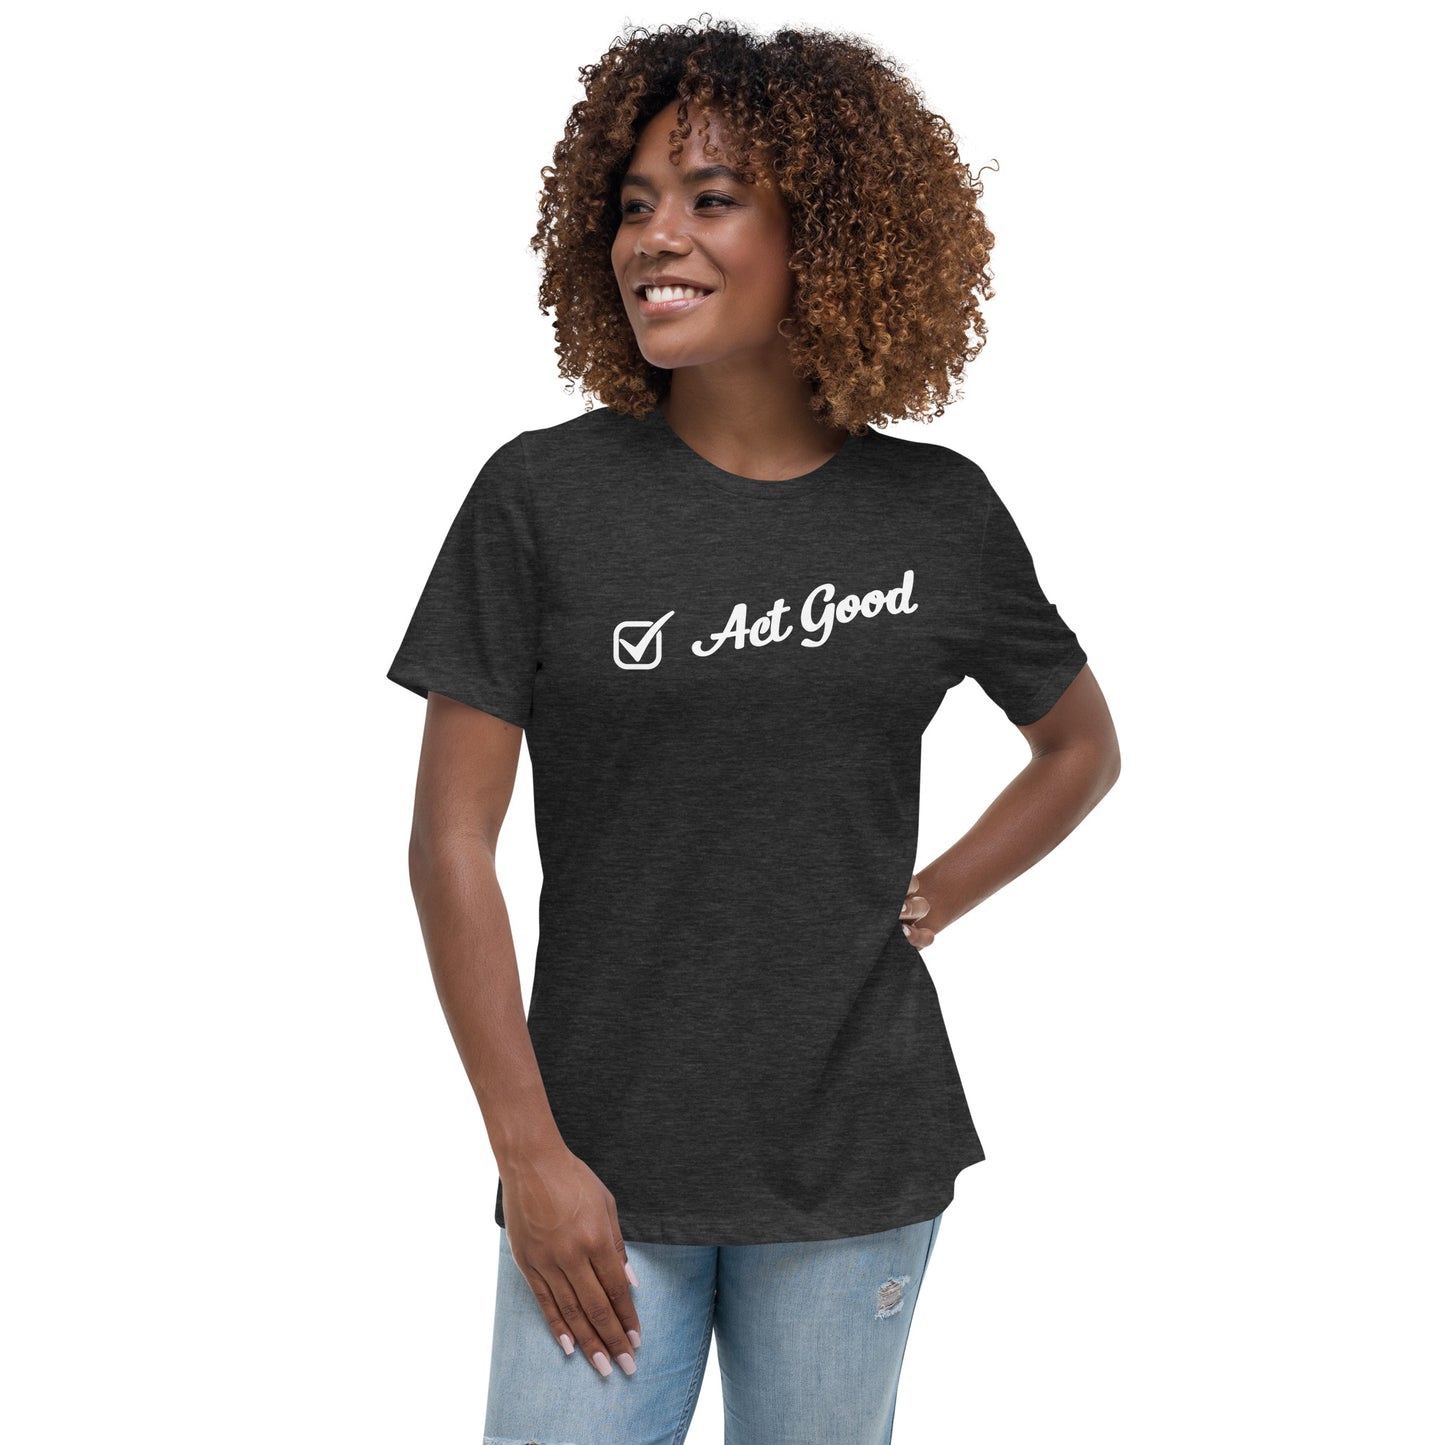 "Act Good" Women’s T-Shirt